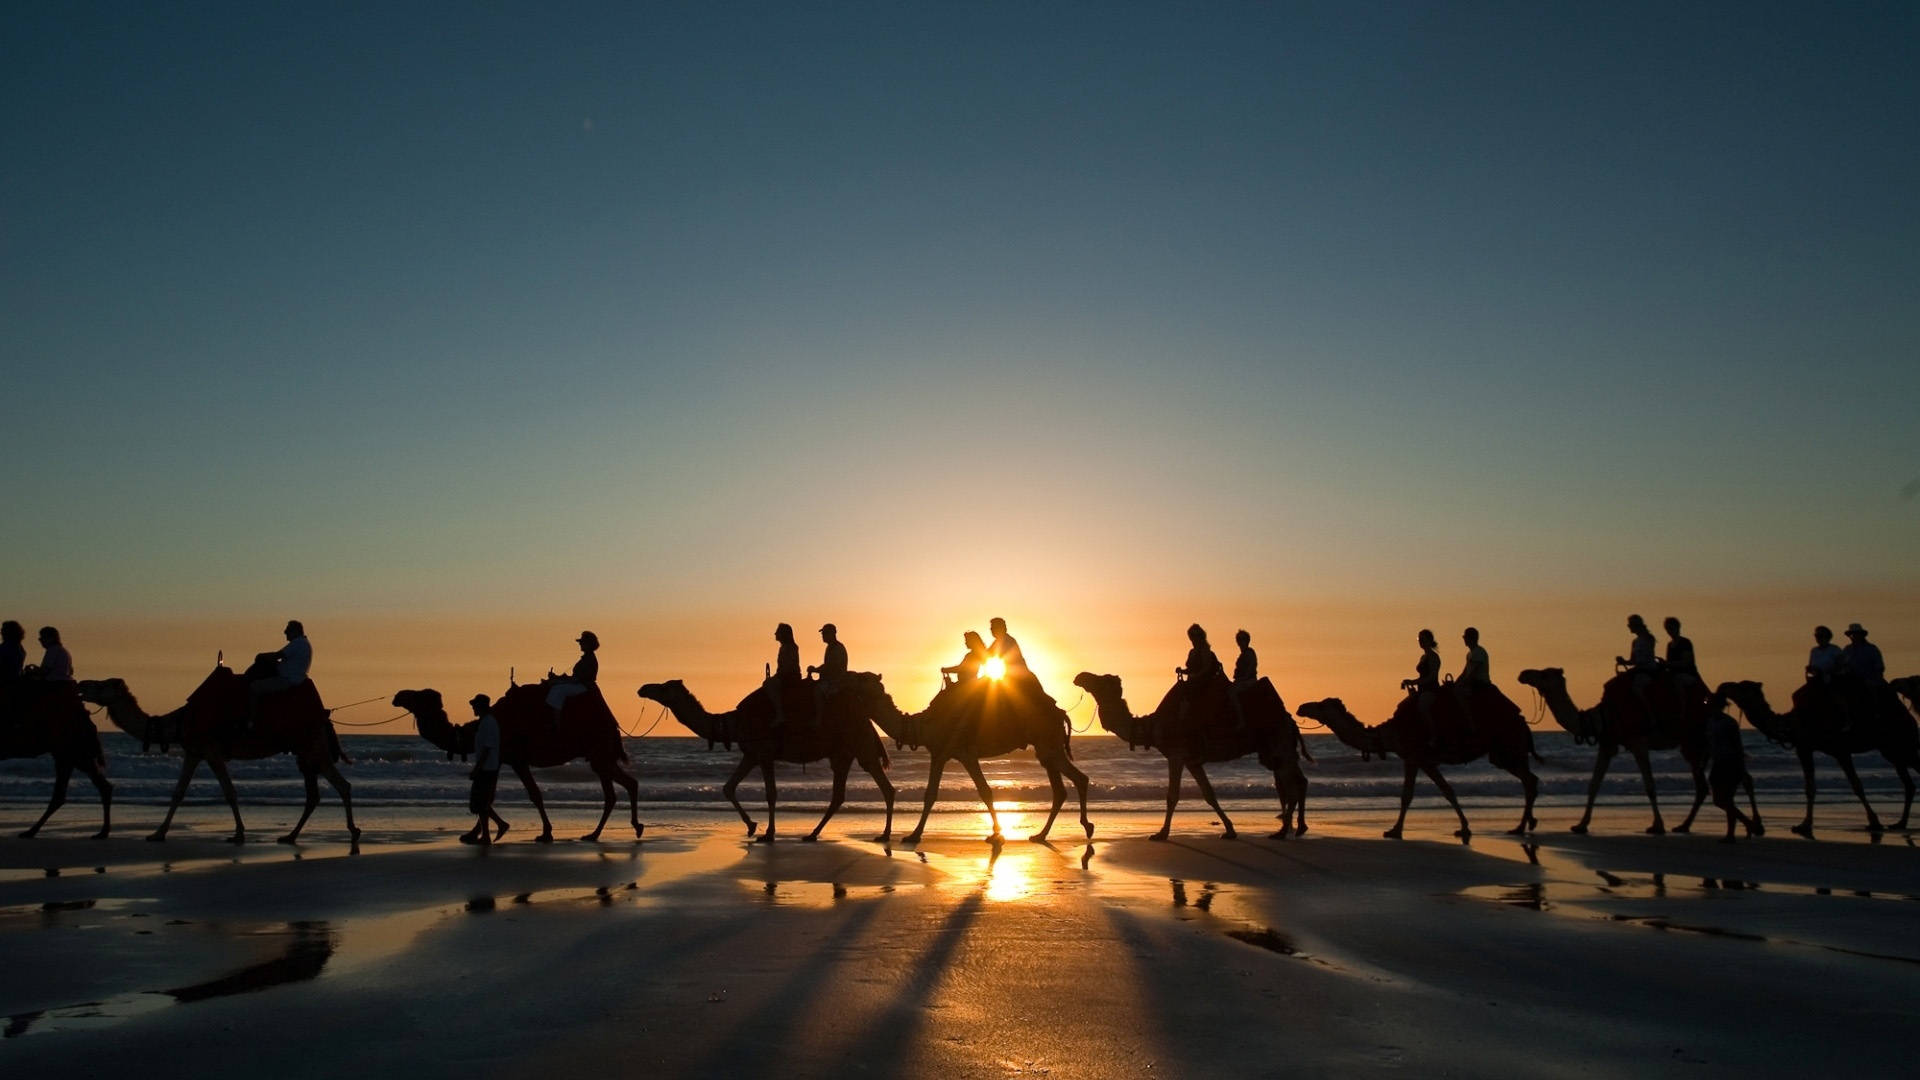 Morocco Camel Caravan Background